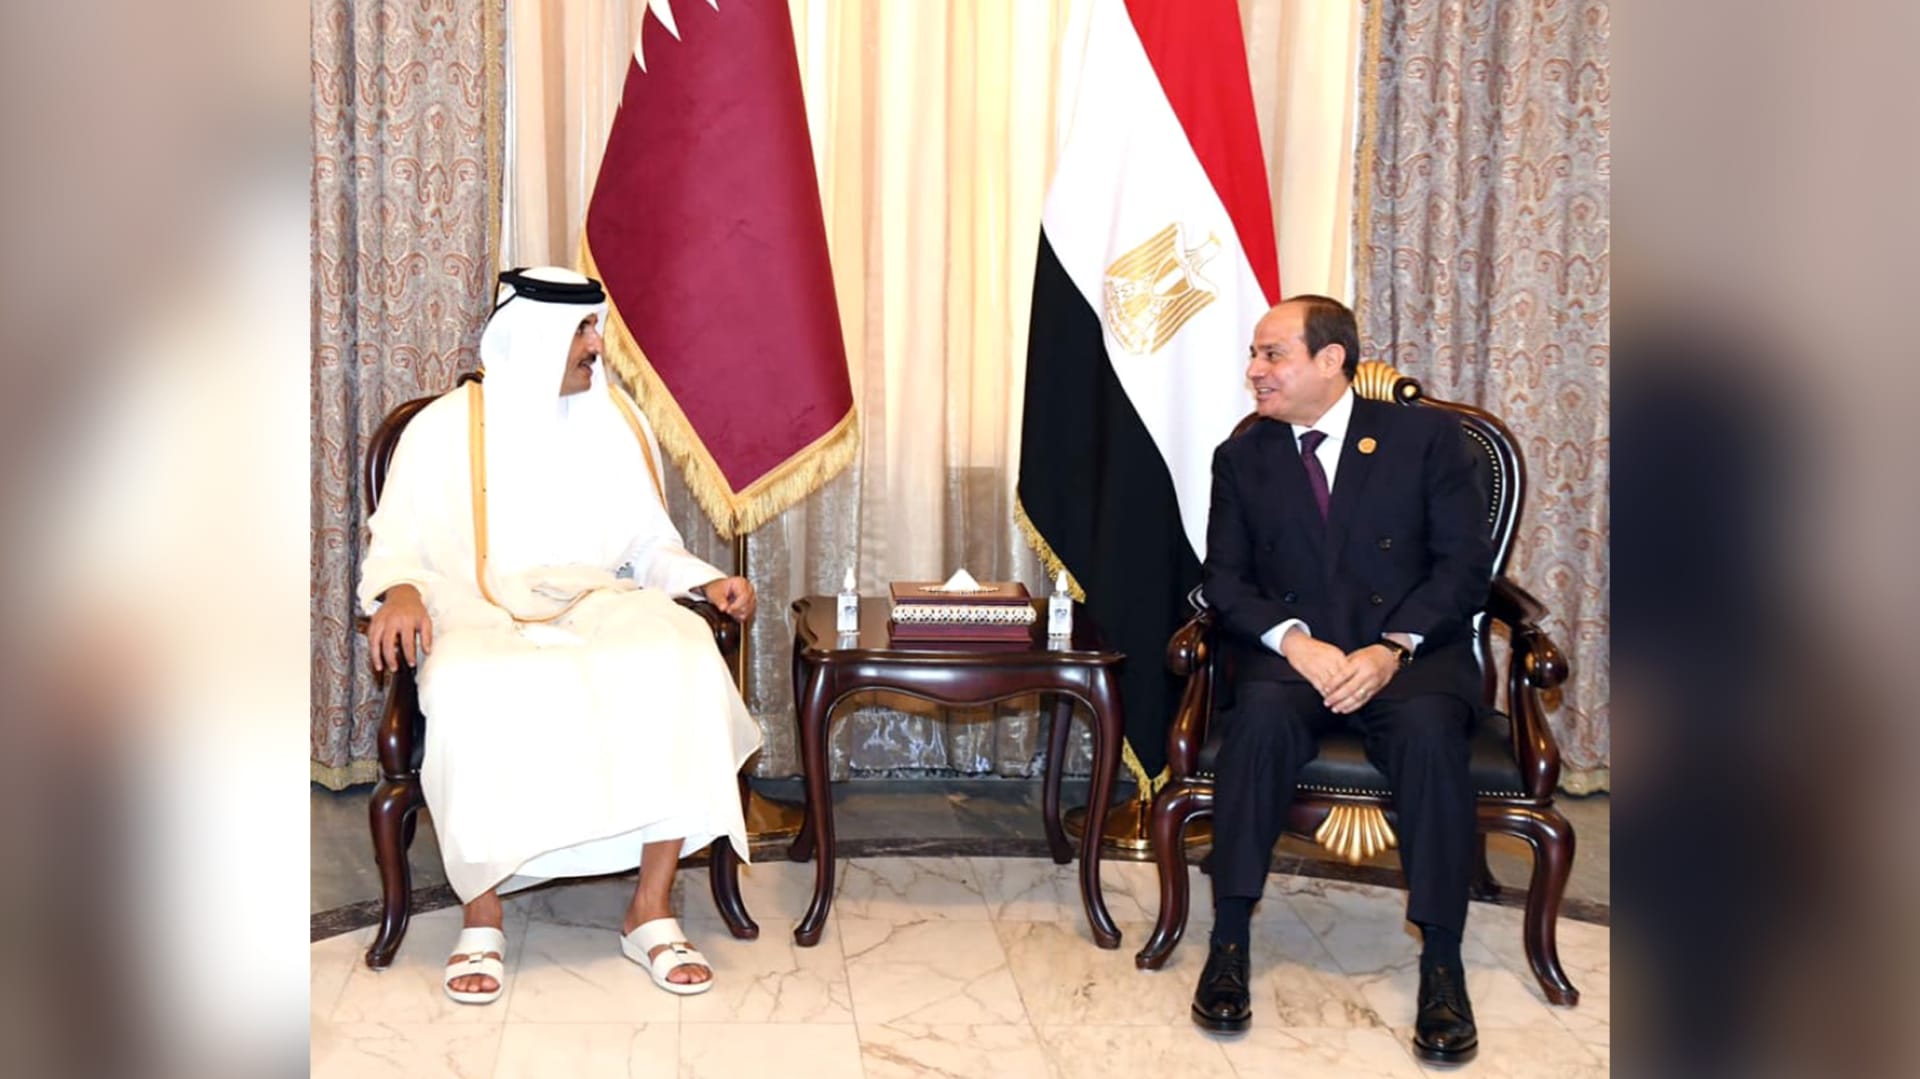 للمرة الأولى بعد سنوات من القطيعة... أمير قطر في مصر